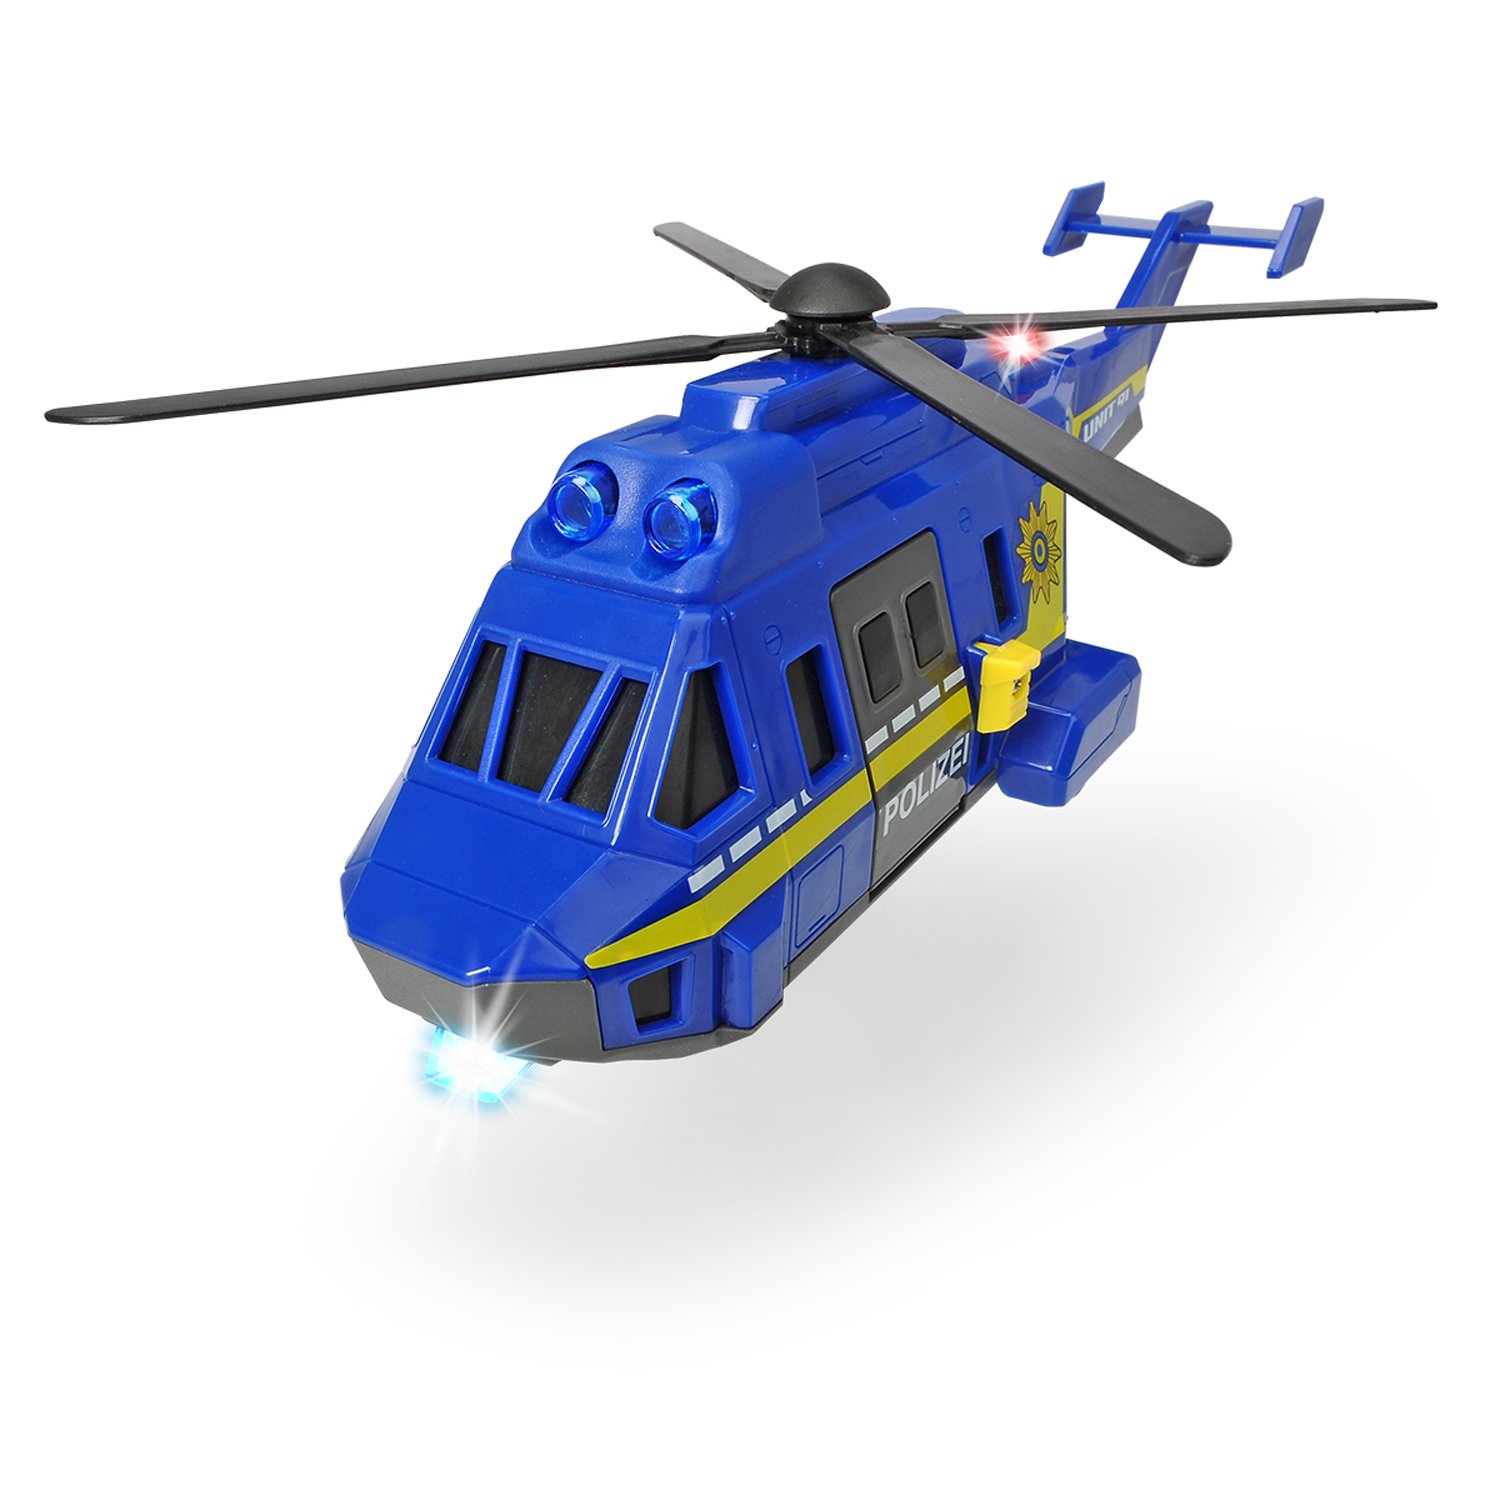 Полицейский вертолет, свет, звуковые эффекты, 26 см  